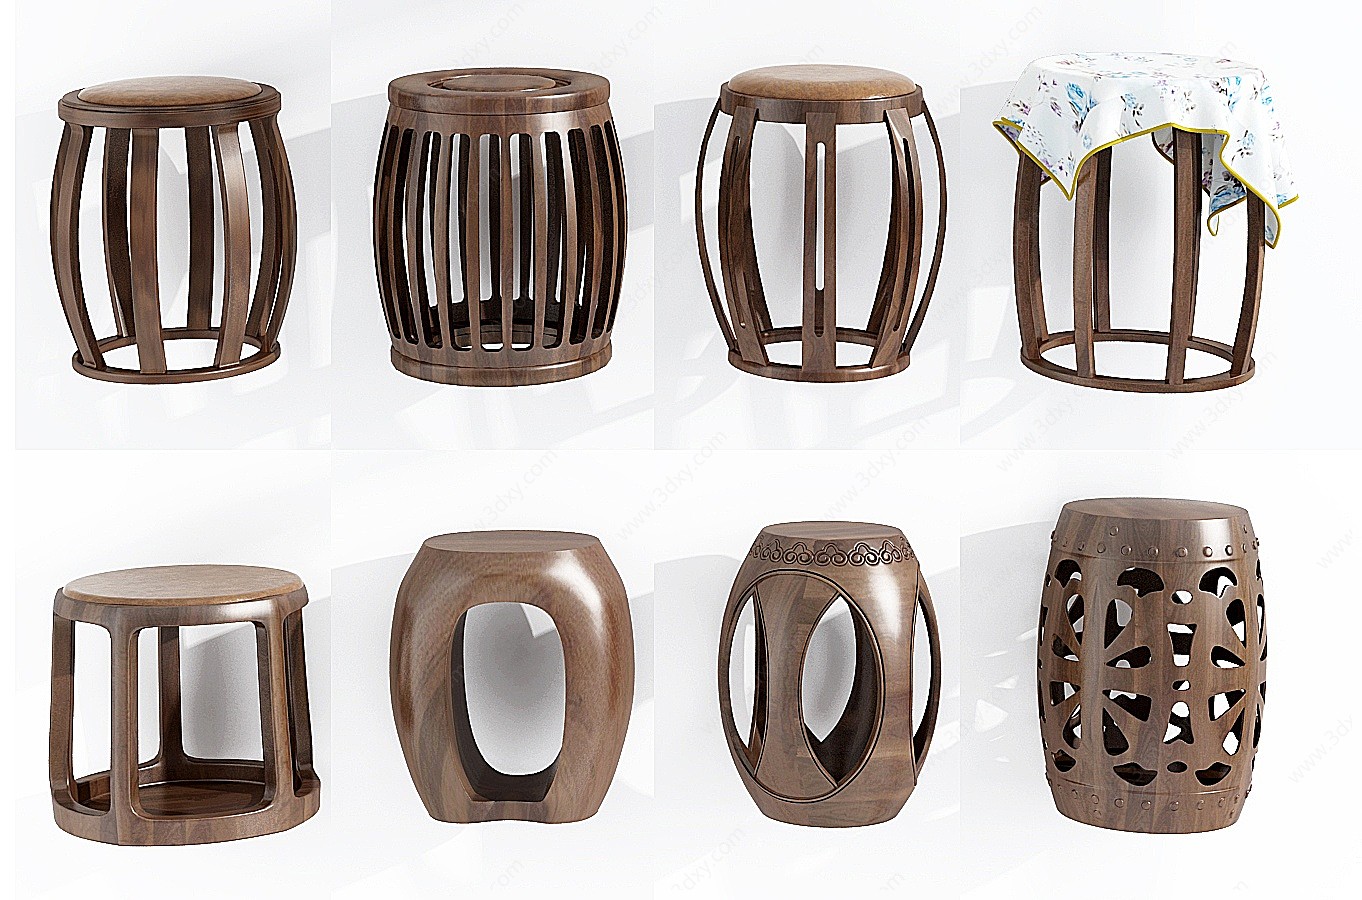 中式实木圆凳鼓凳组合3D模型